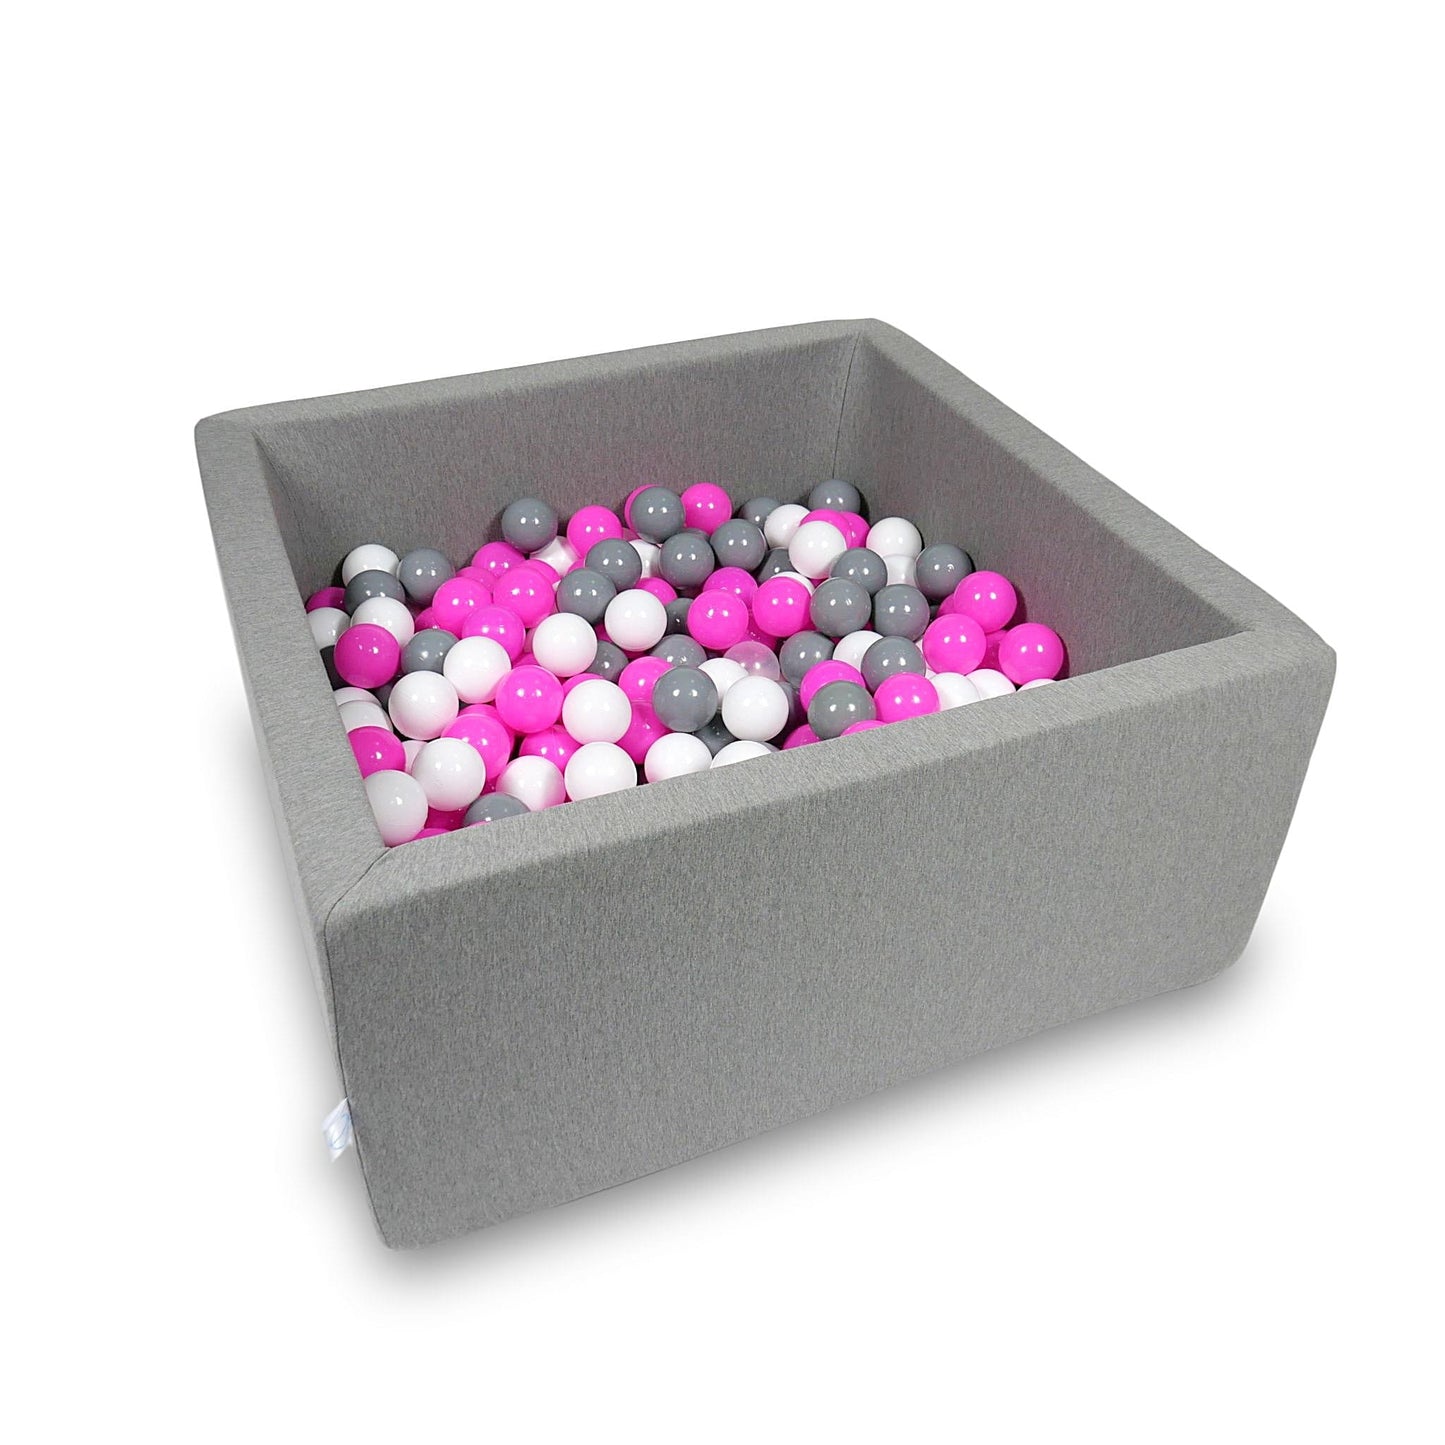 Piscine à Balles 90x90x40cm gris avec balles 400pcs (blanc, gris, rose)